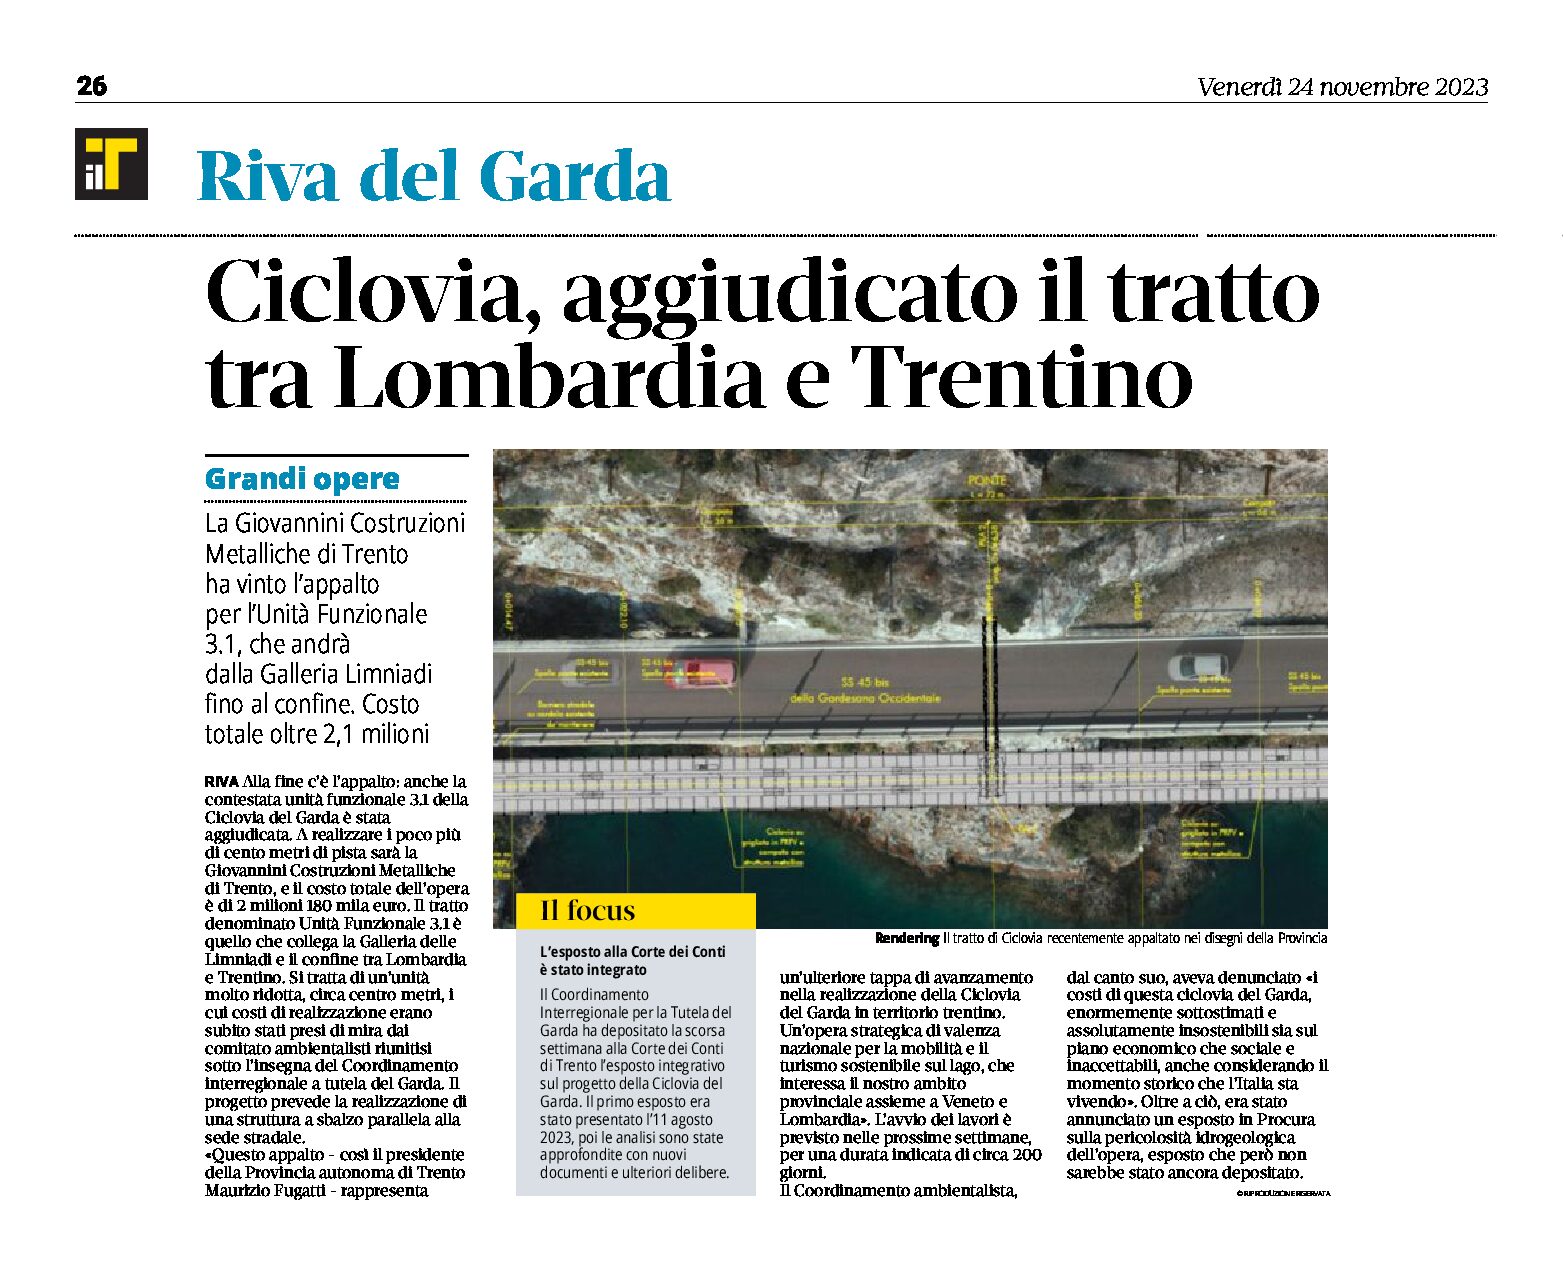 Ciclovia del Garda: aggiudicato il tratto tra Lombardia e Trentino